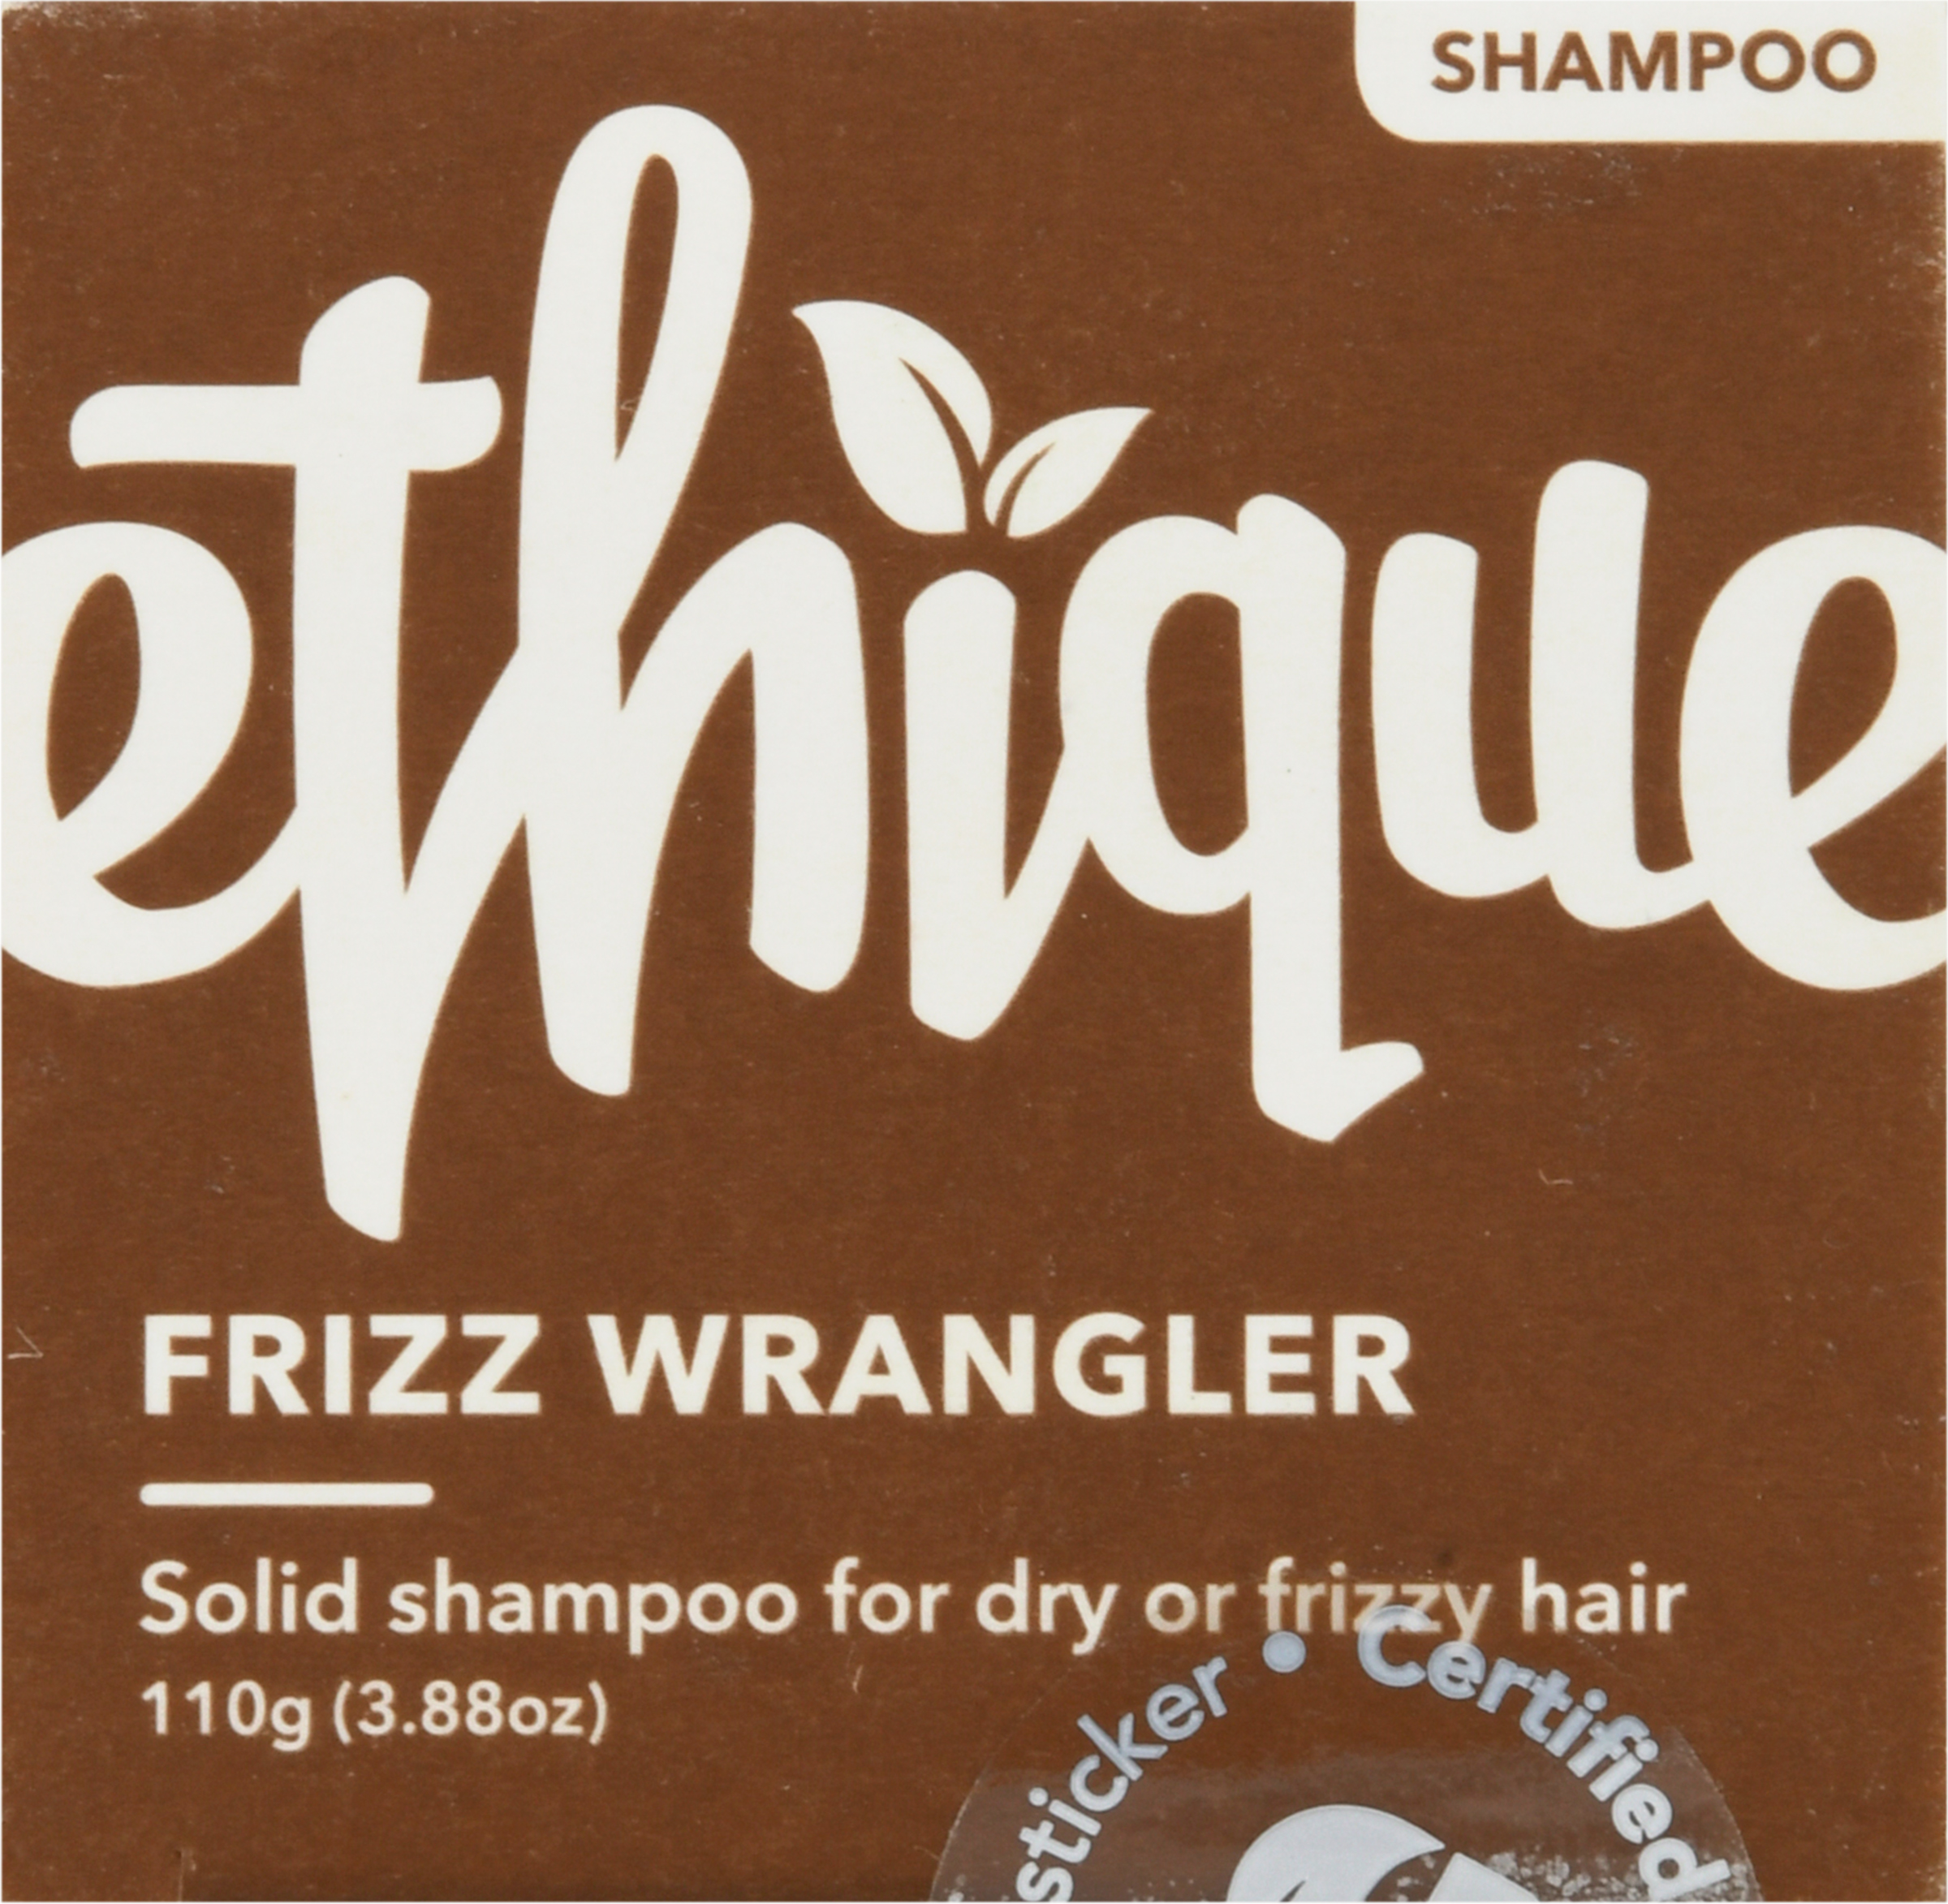 Ethique Eco-Friendly Solid Shampoo Bar, Frizz Wrangler 3.88 oz